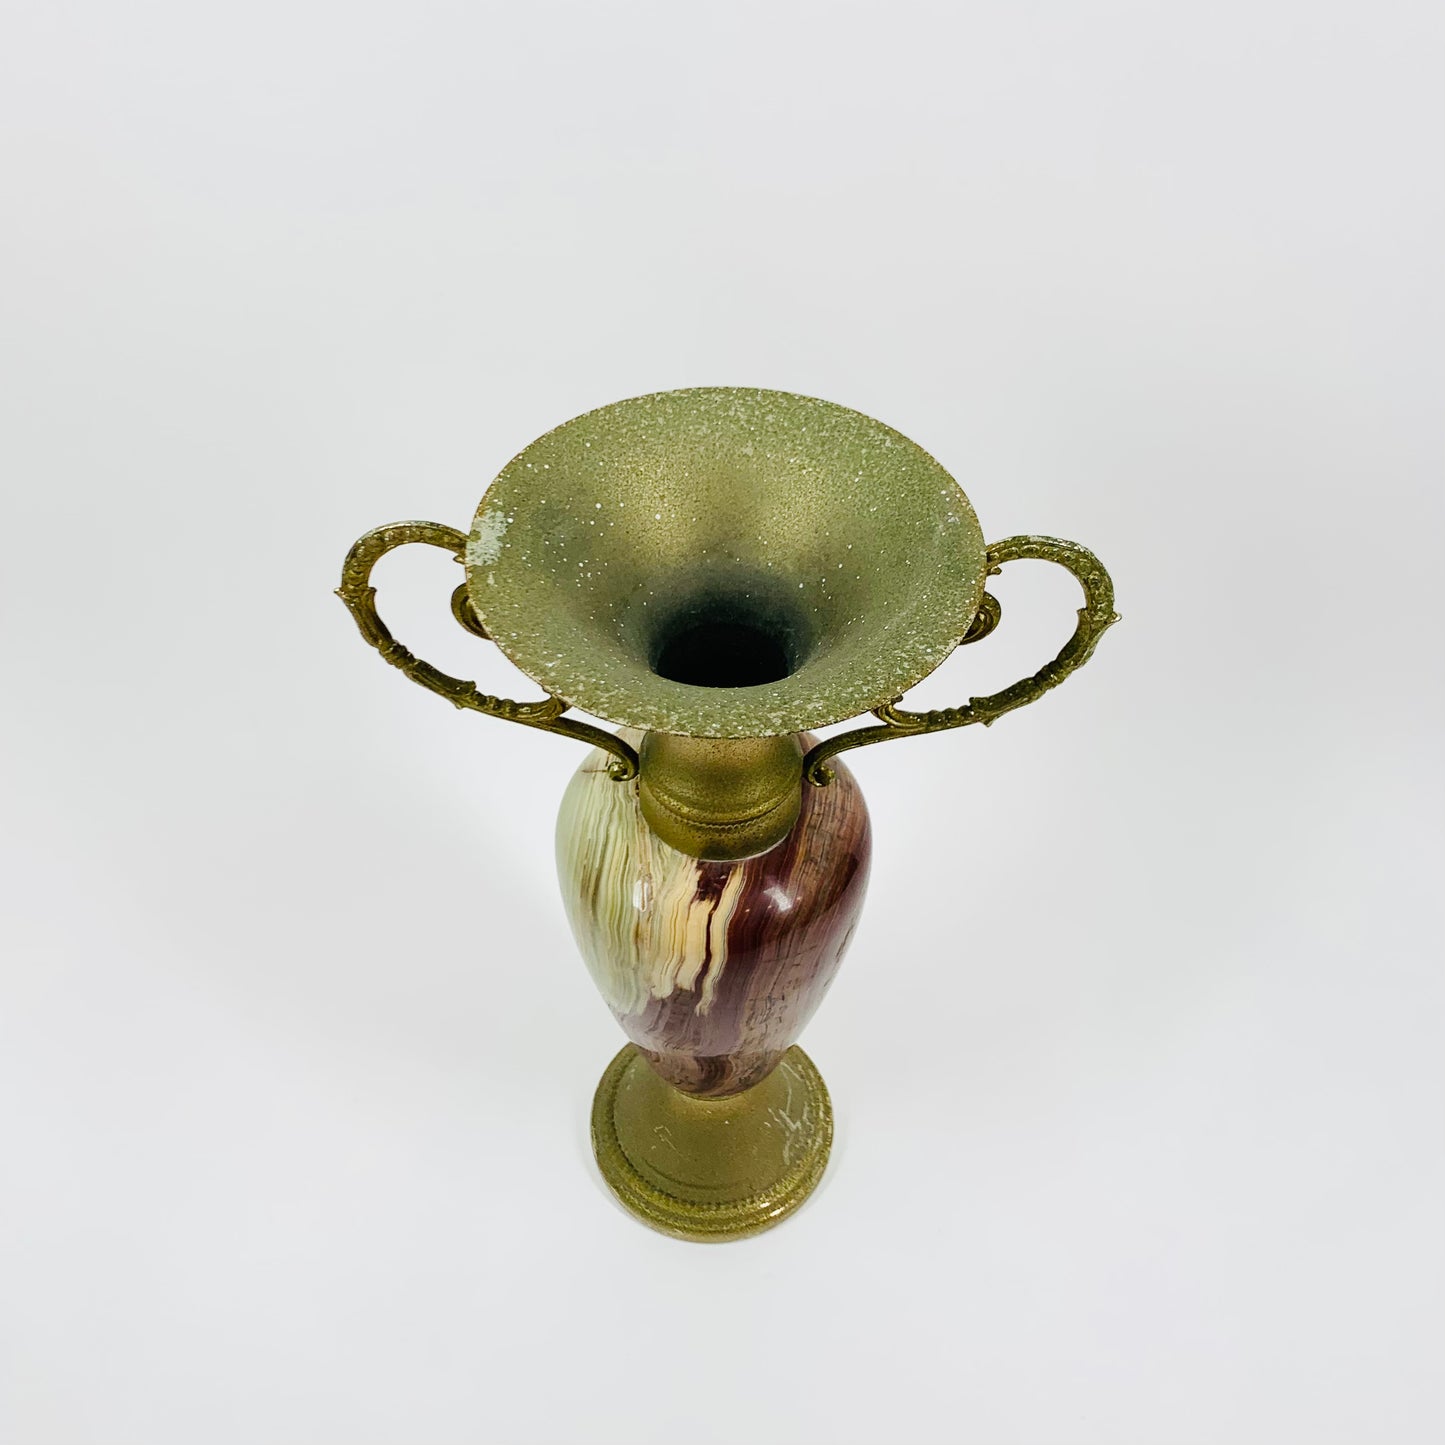 Antique onyx amphora candle holder/oil burner